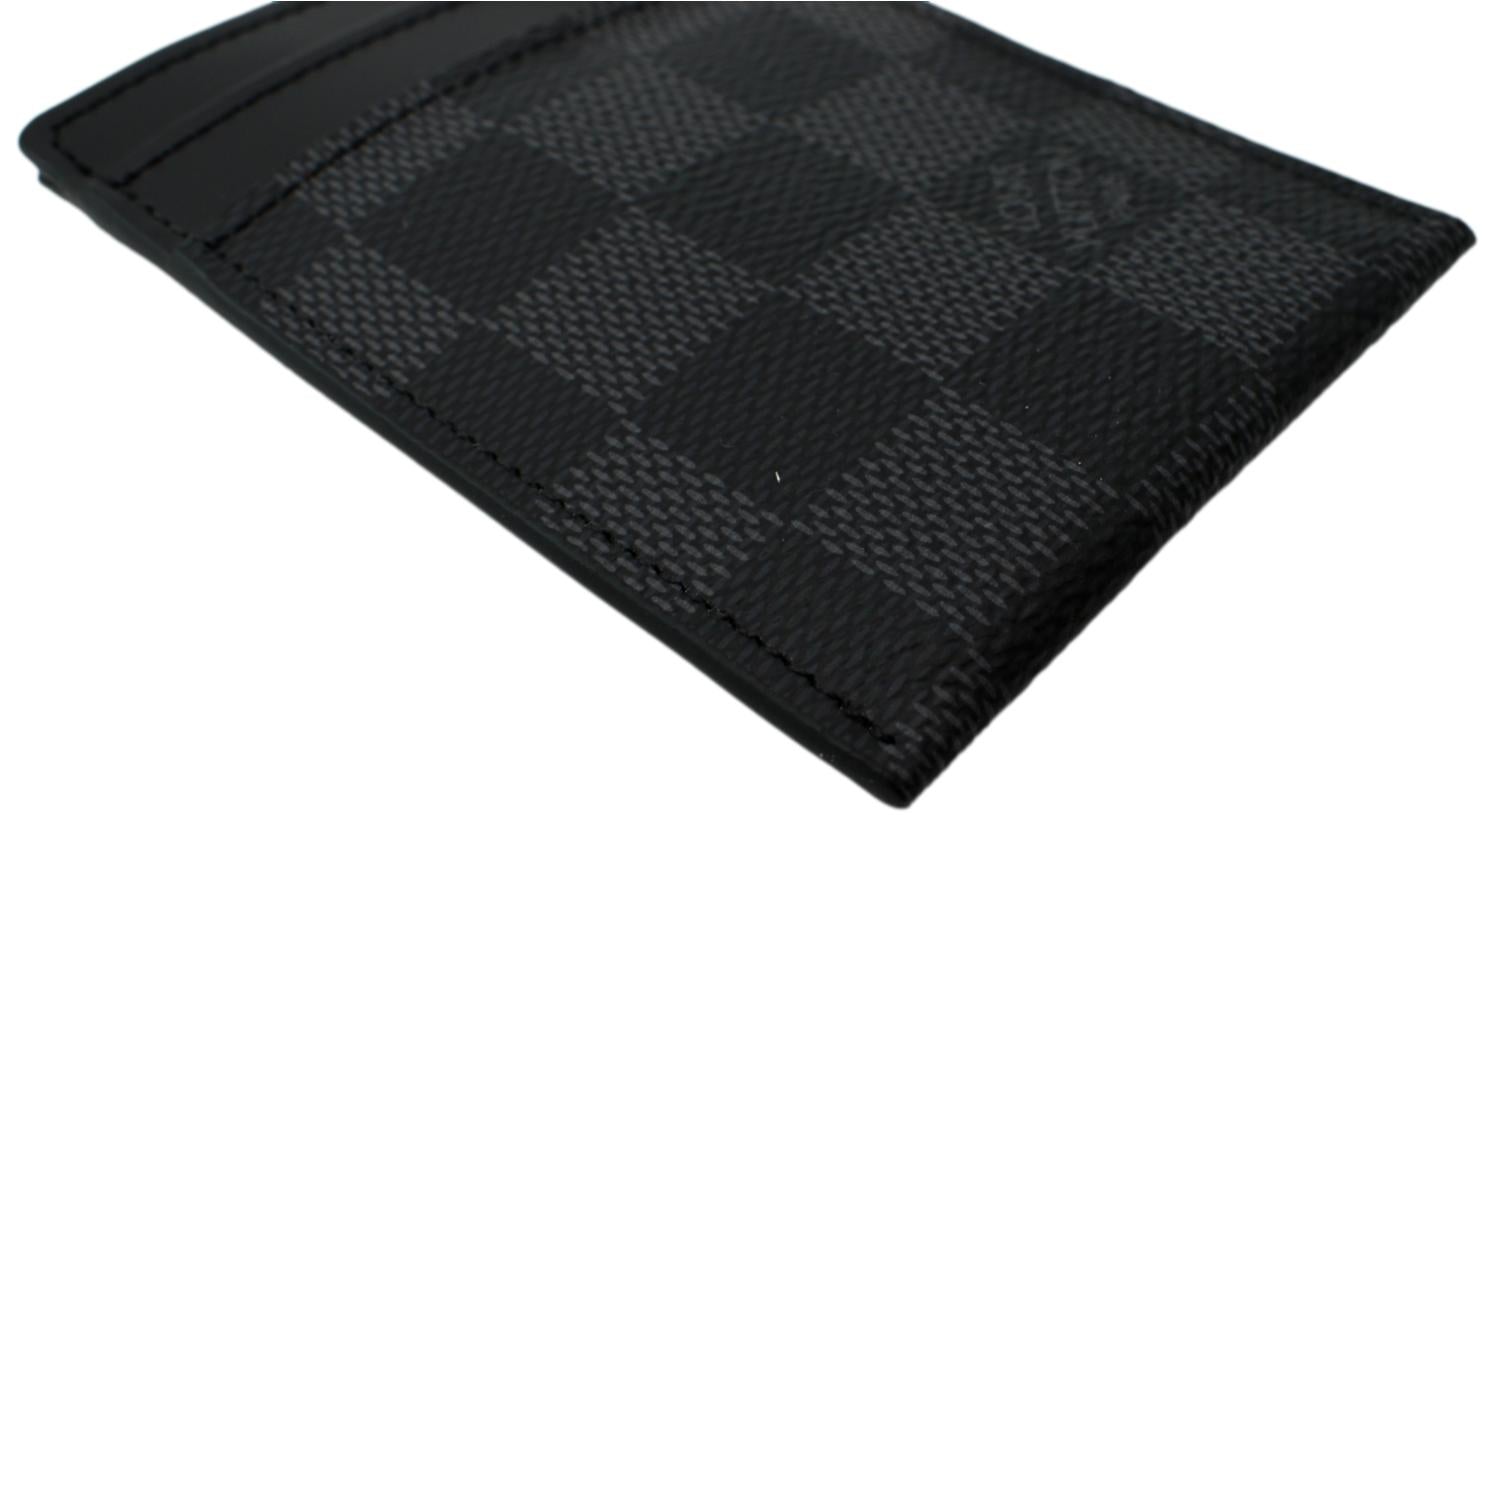 Louis Vuitton 2020 Damier Graphite Pattern Card Holder - Black